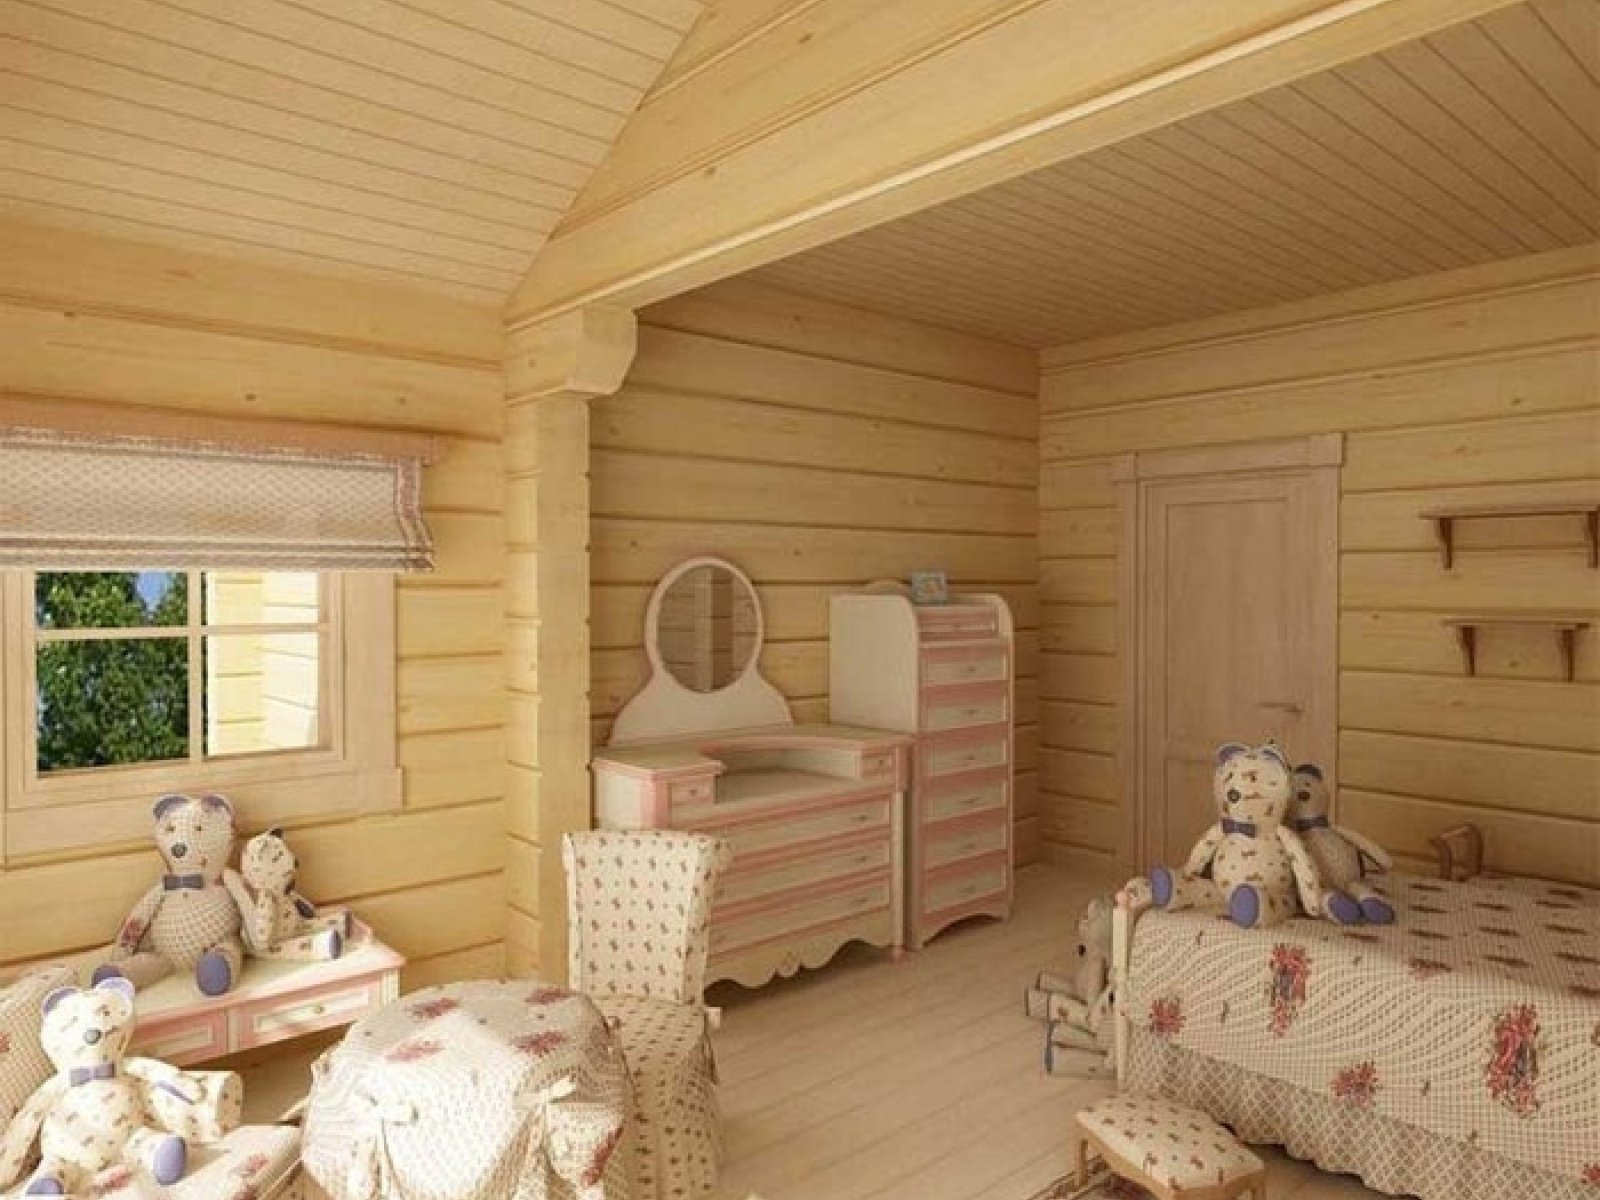 Дизайн детской комнаты в деревянном доме » Современный дизайн на Vip-1gl.ru
